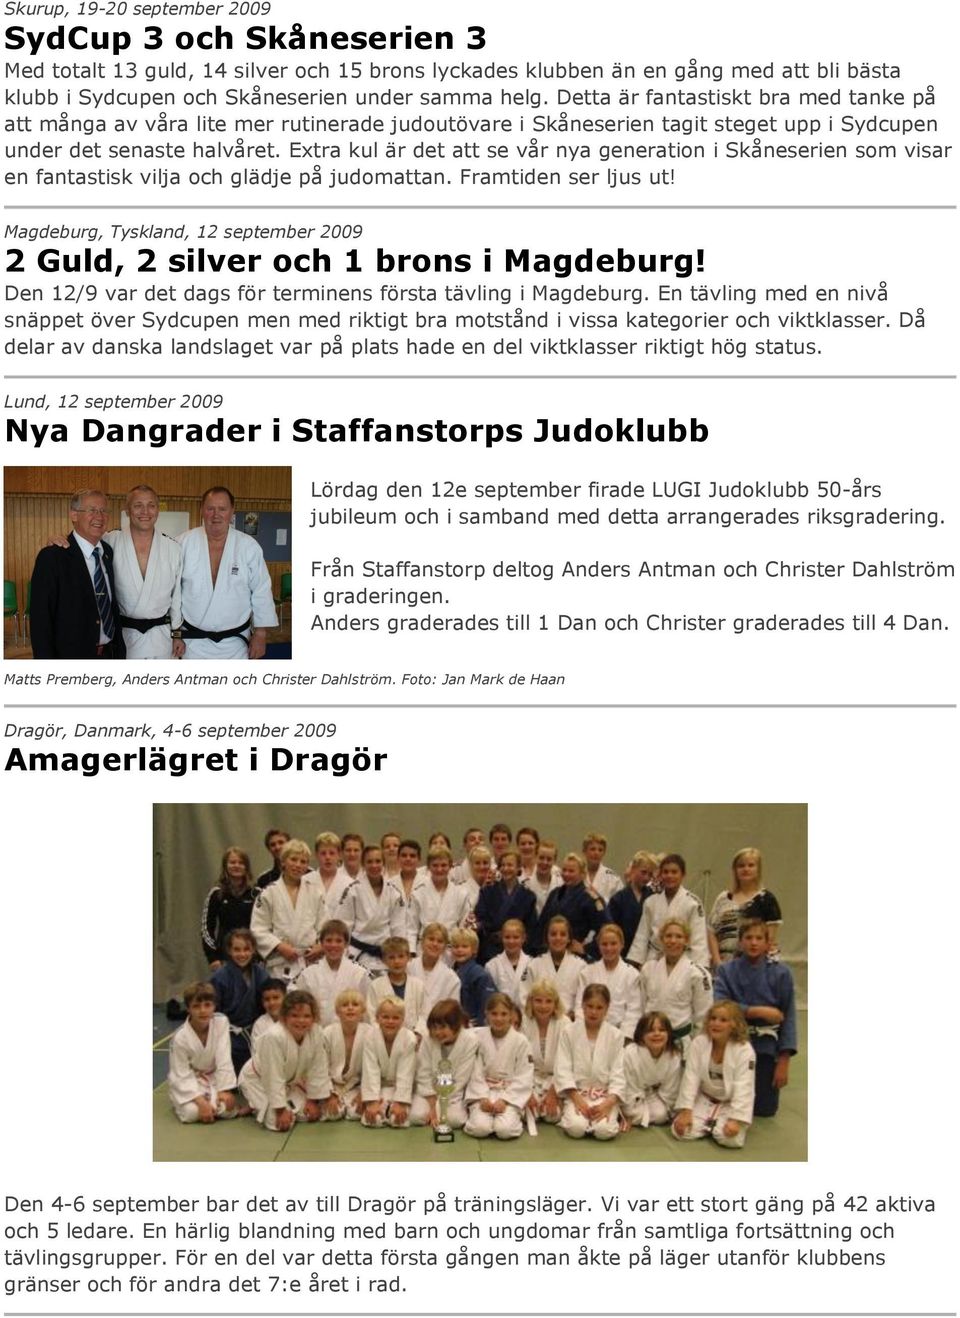 Extra kul är det att se vår nya generation i Skåneserien som visar en fantastisk vilja och glädje på judomattan. Framtiden ser ljus ut!